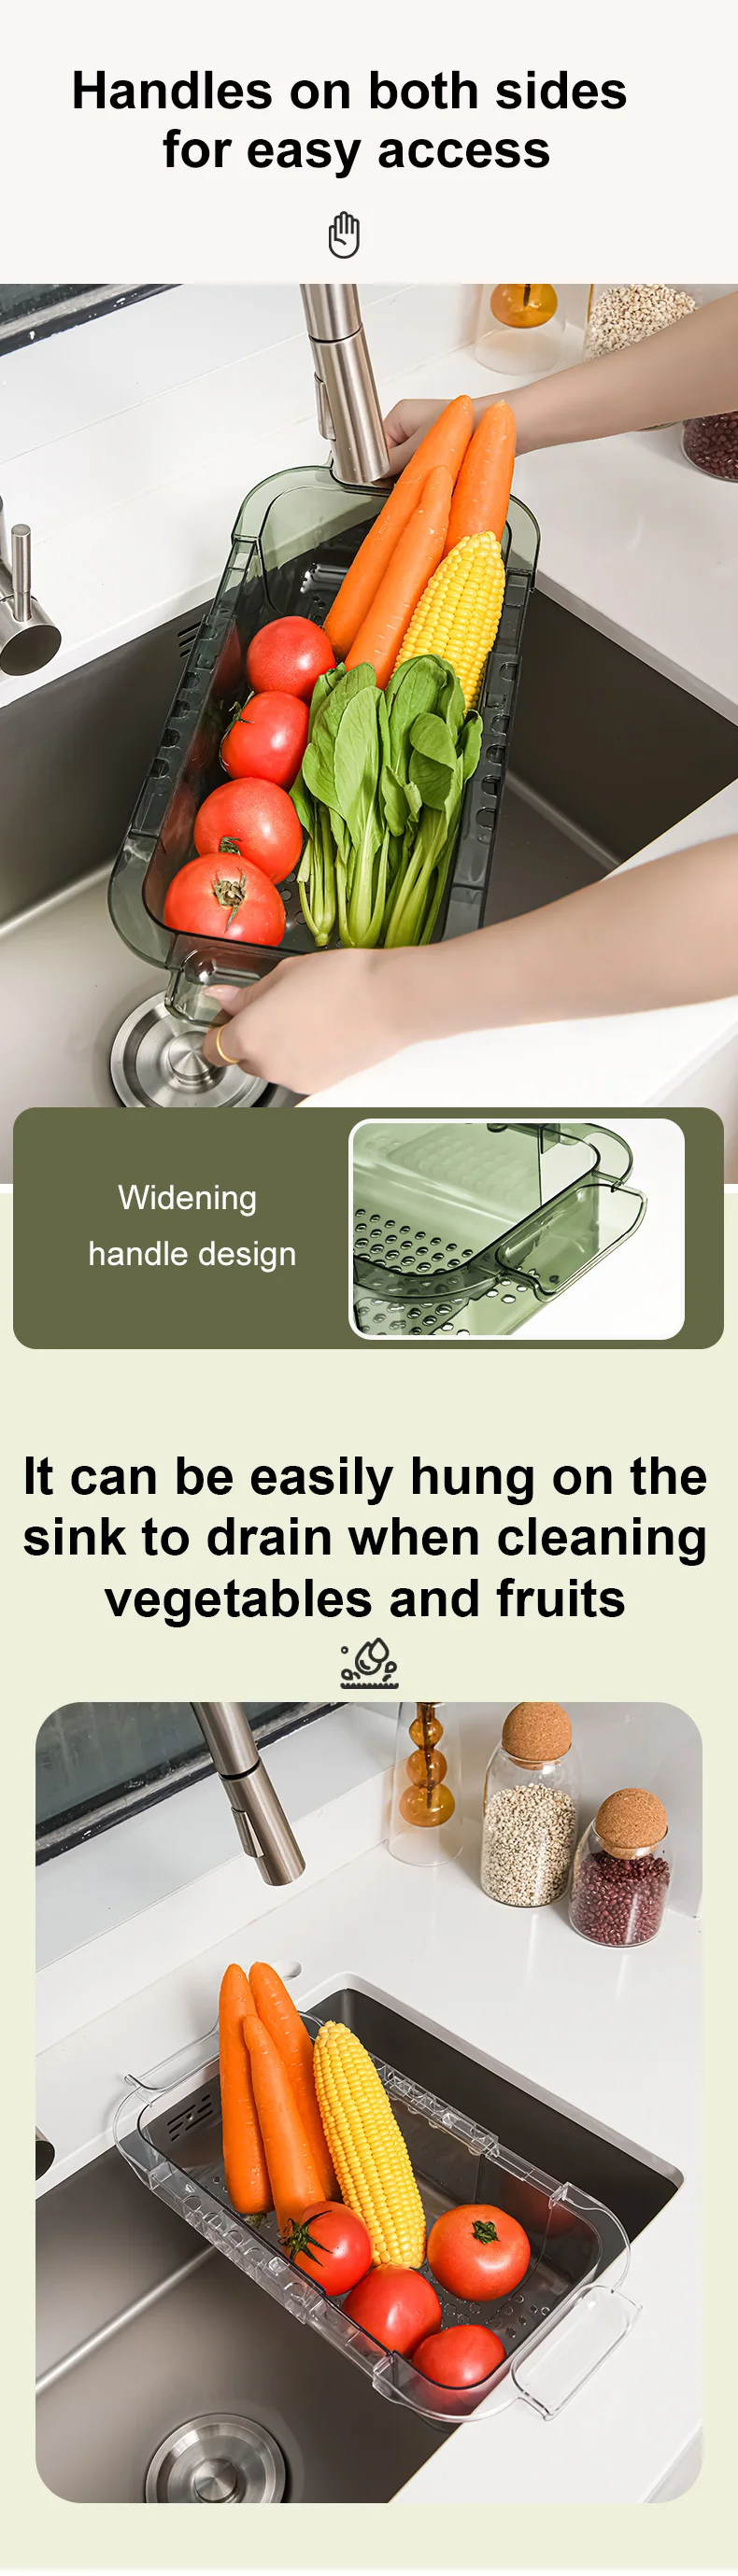 Telescopic Sink Colander Fruits Vegetables Drain Basket, Adjustable Strainer Sink Washing Basket for Kitchen